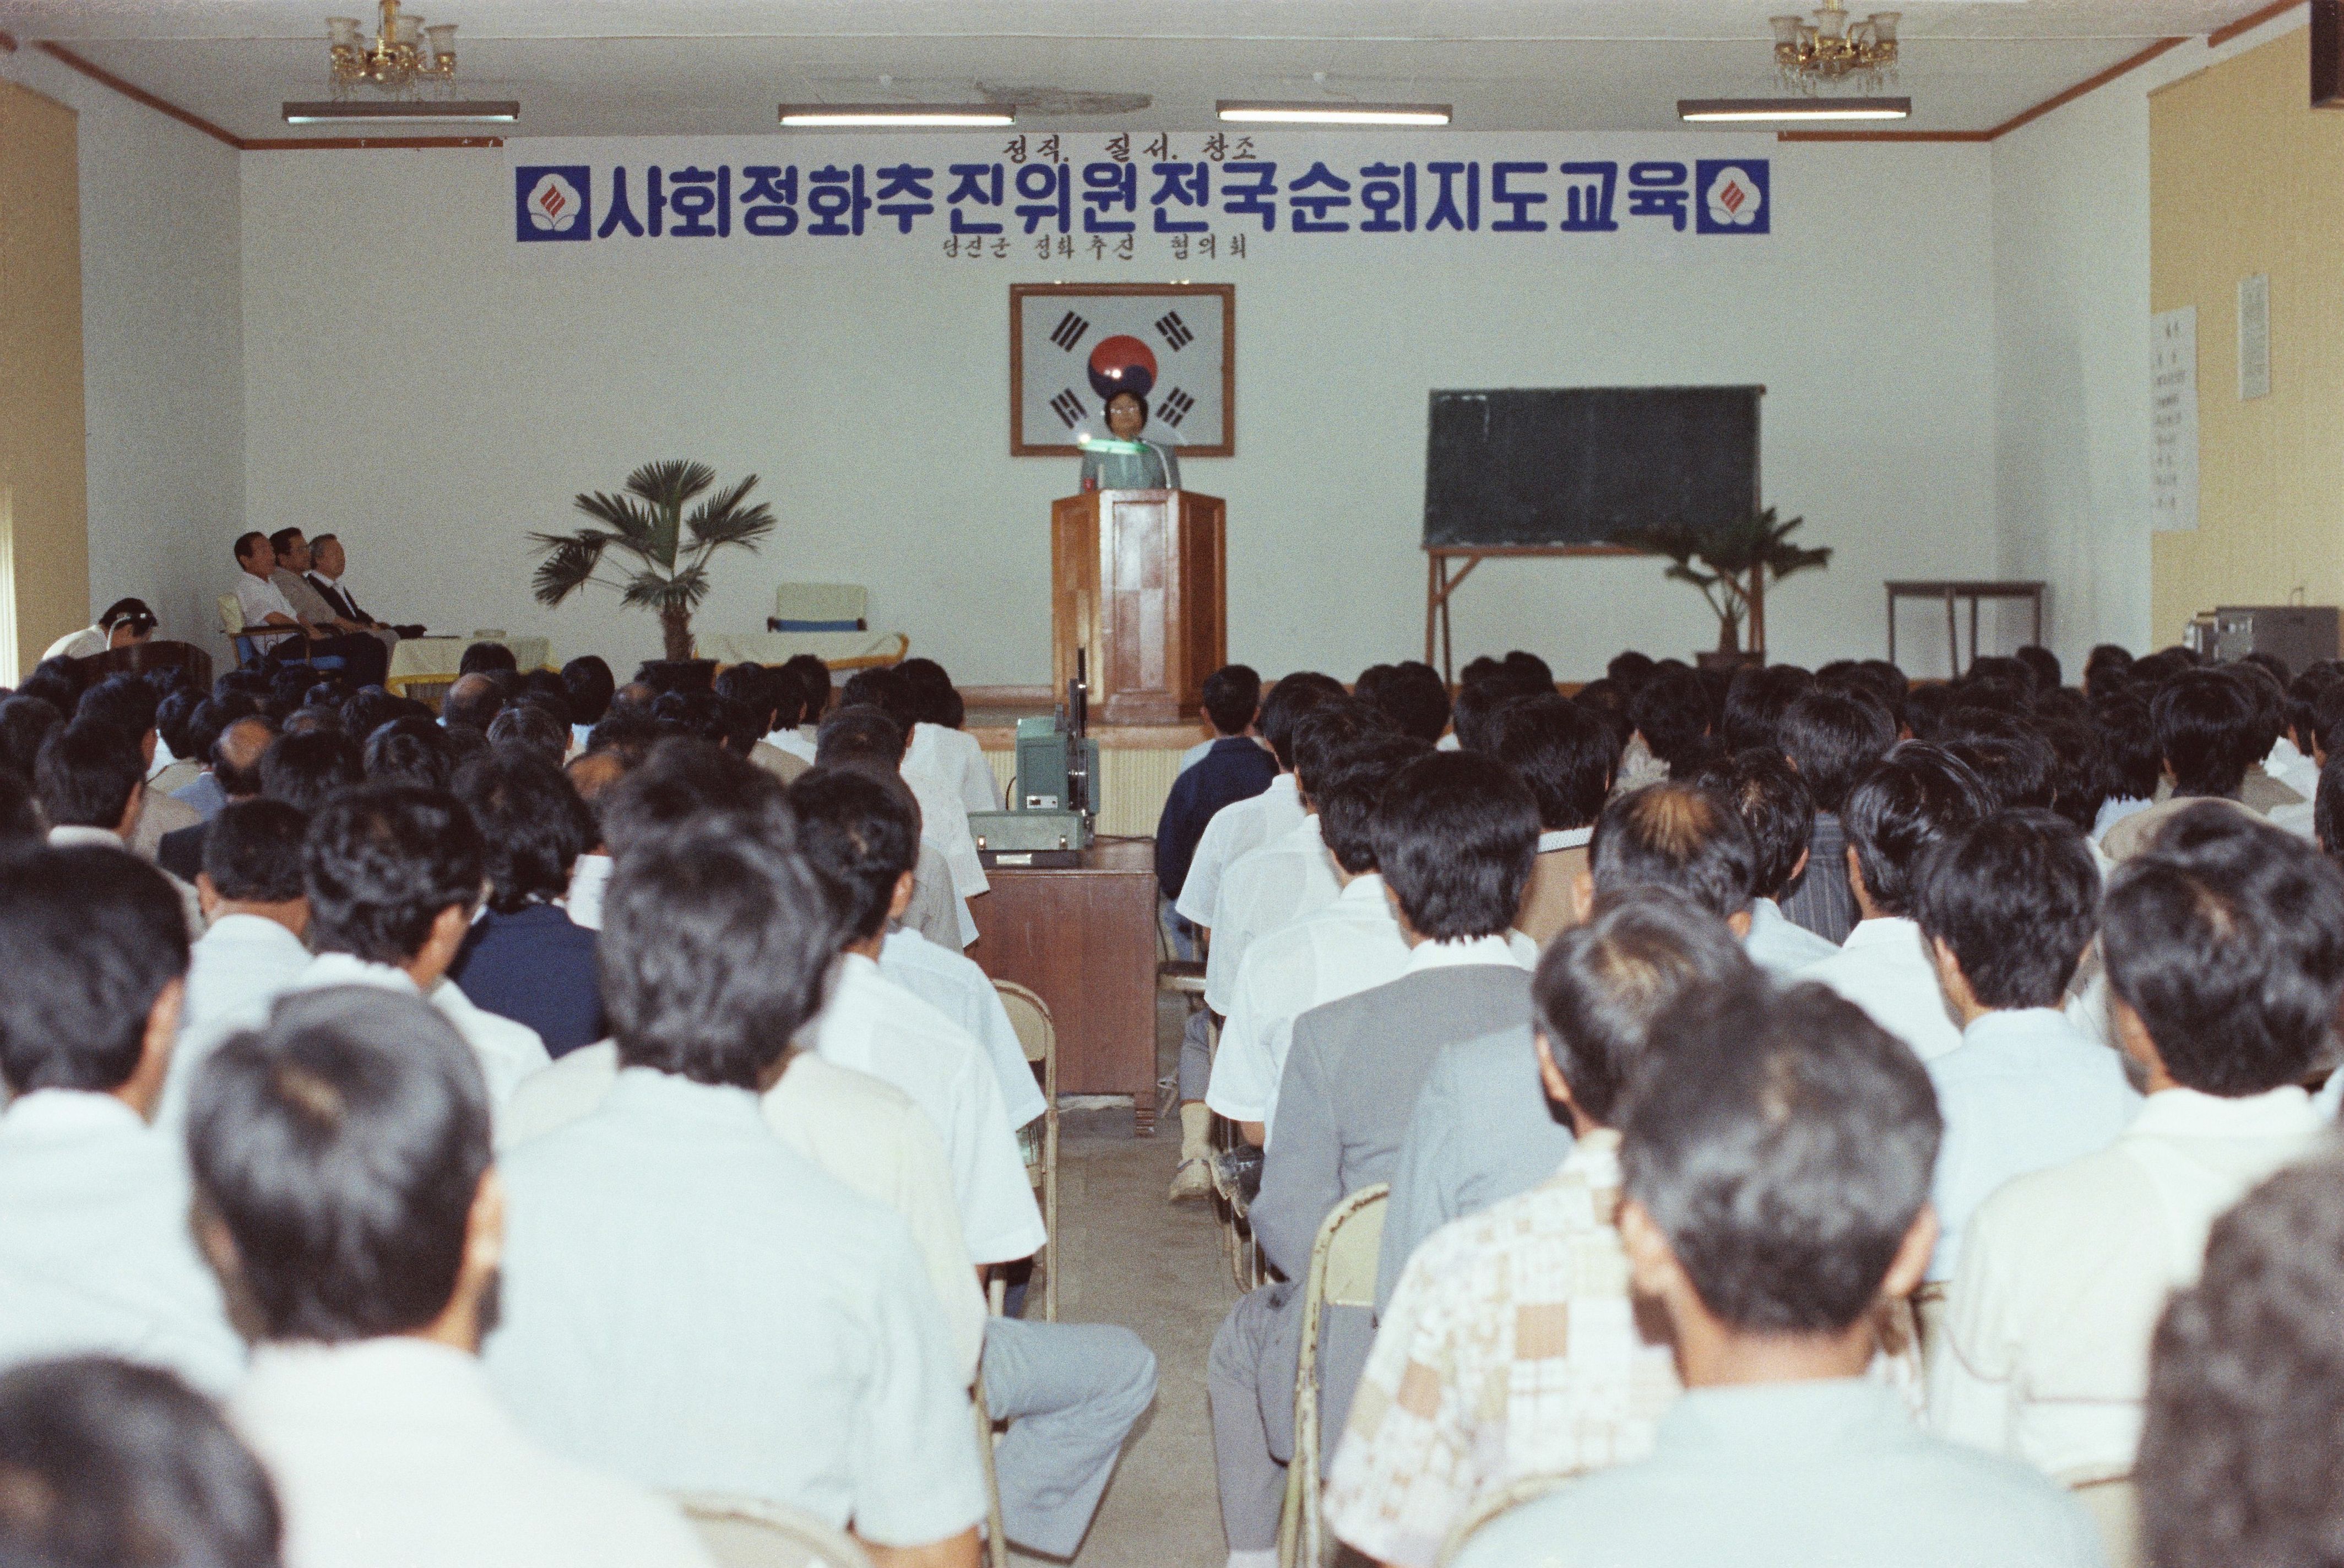 사진자료(1980년대)/1983/사회정화 추진위원 전국순회 지도교육② 0/